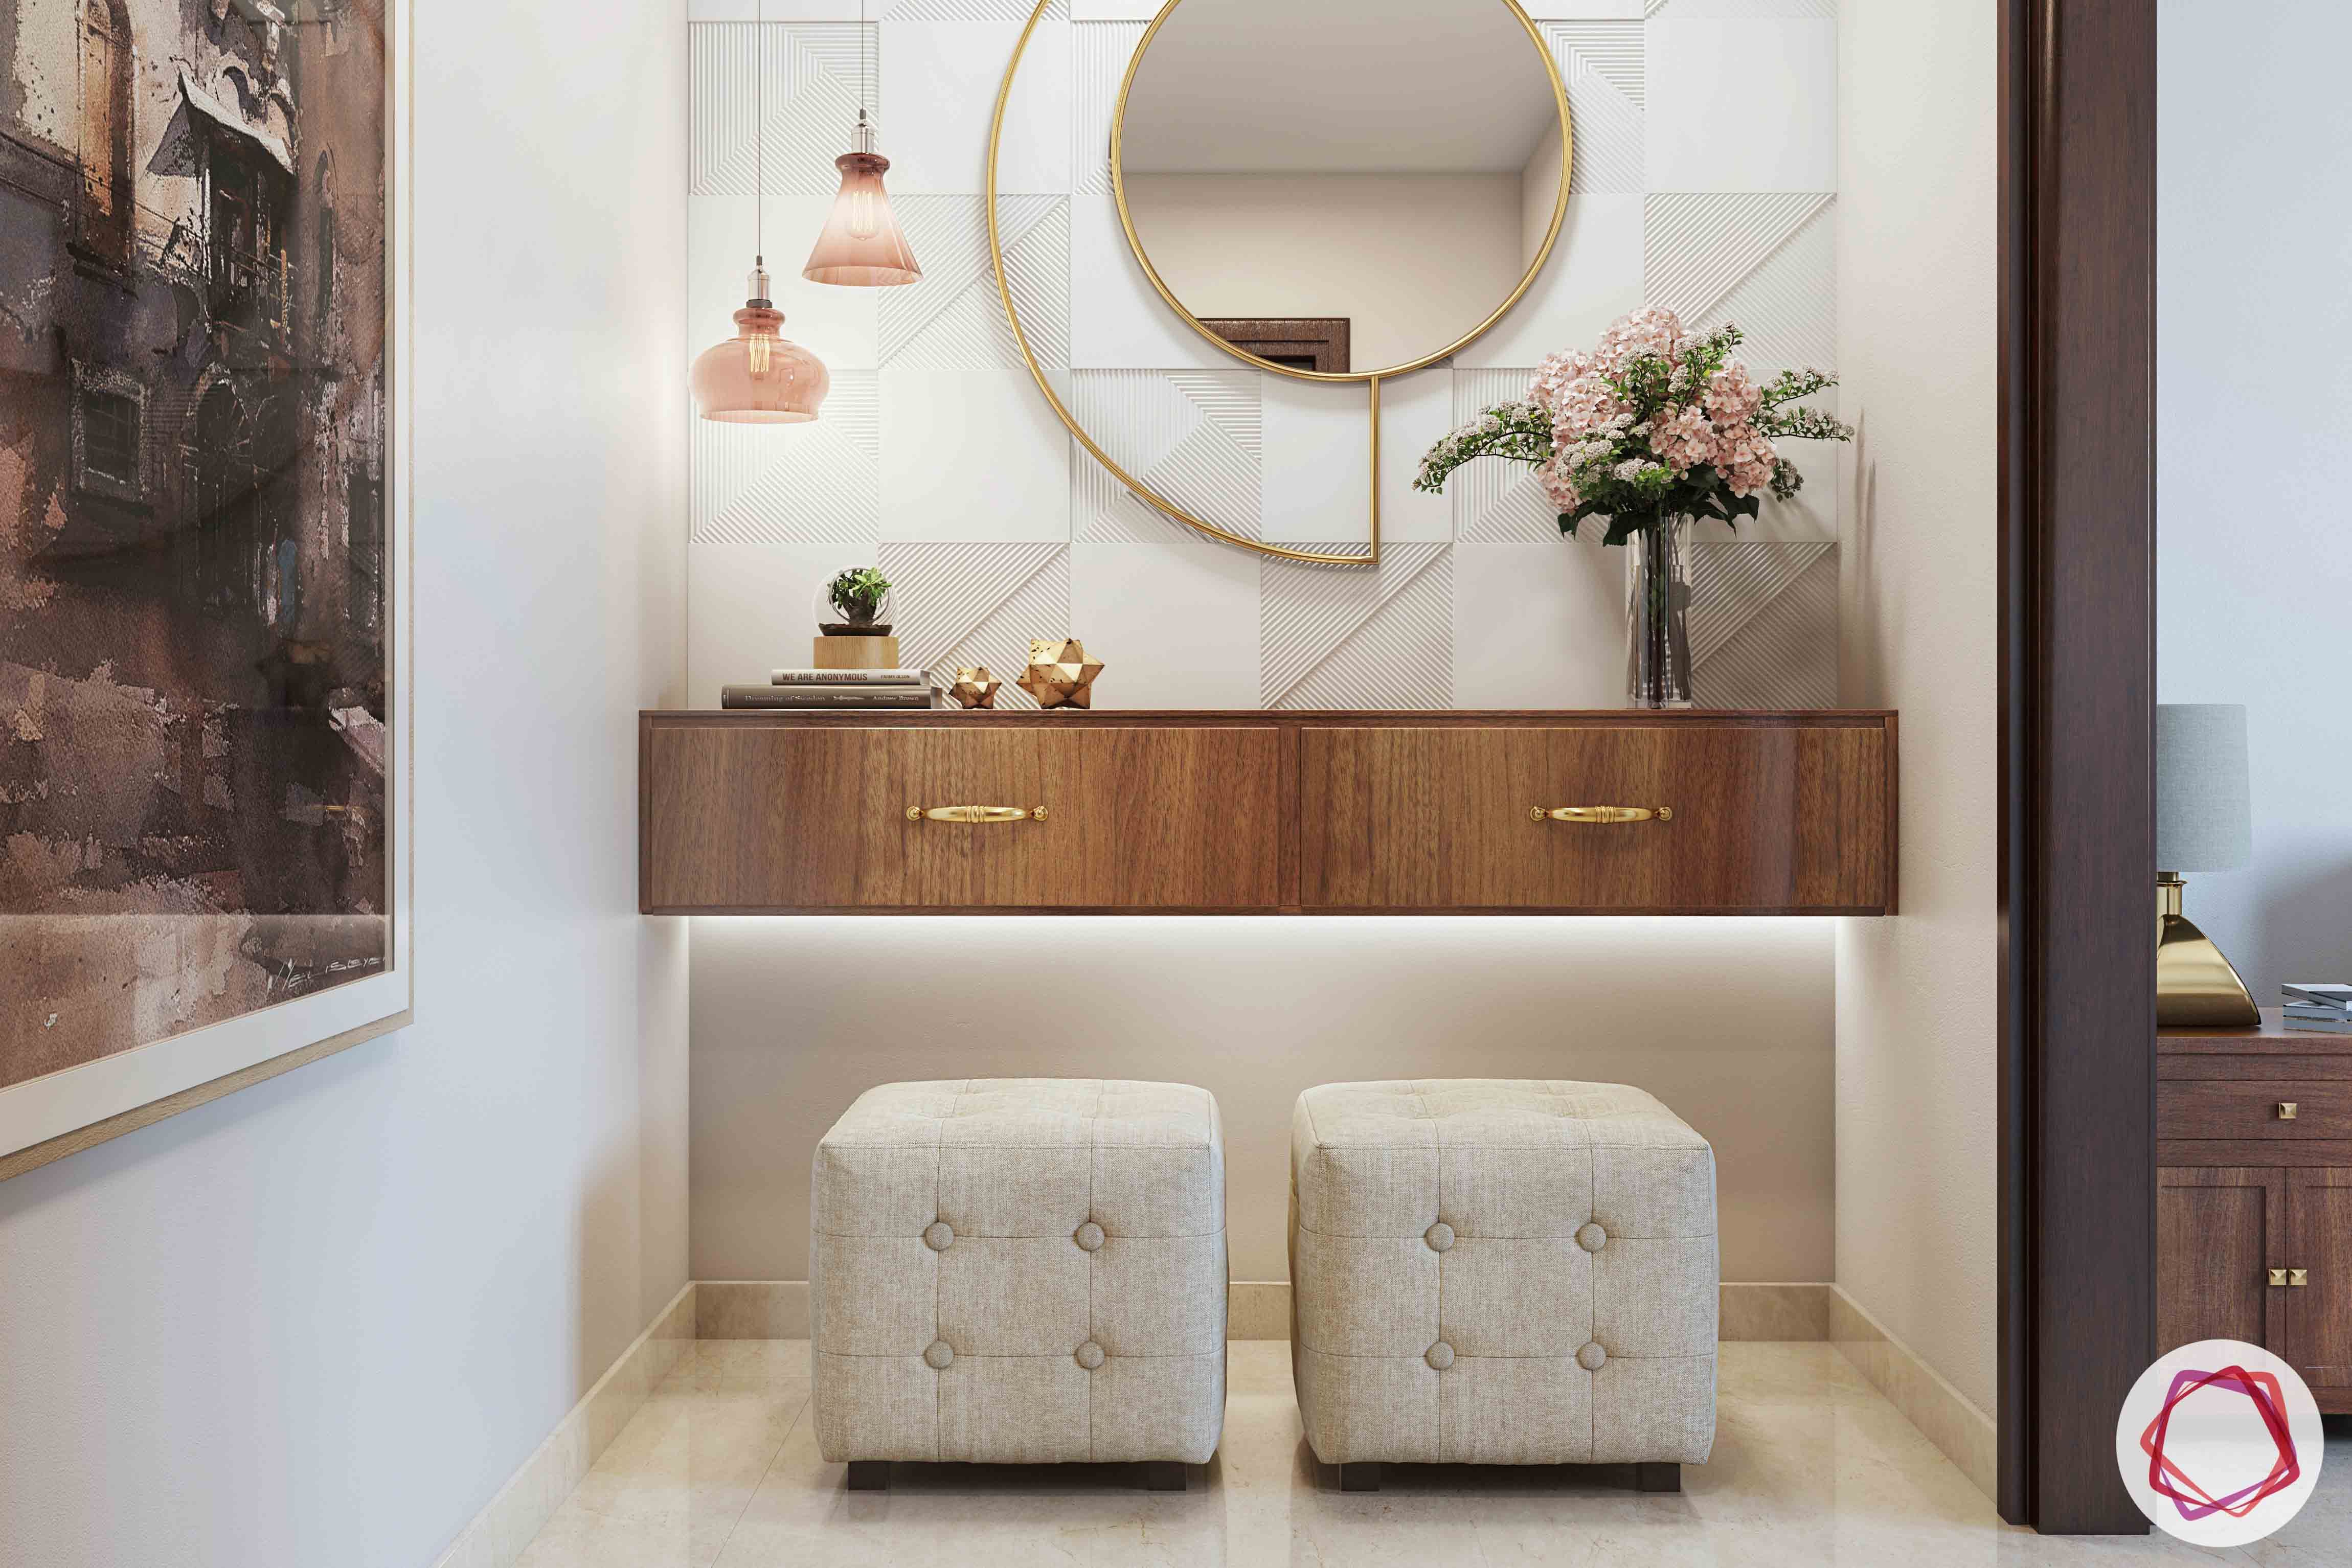 passage design ideas-round mirror design-tufted ottoman designs